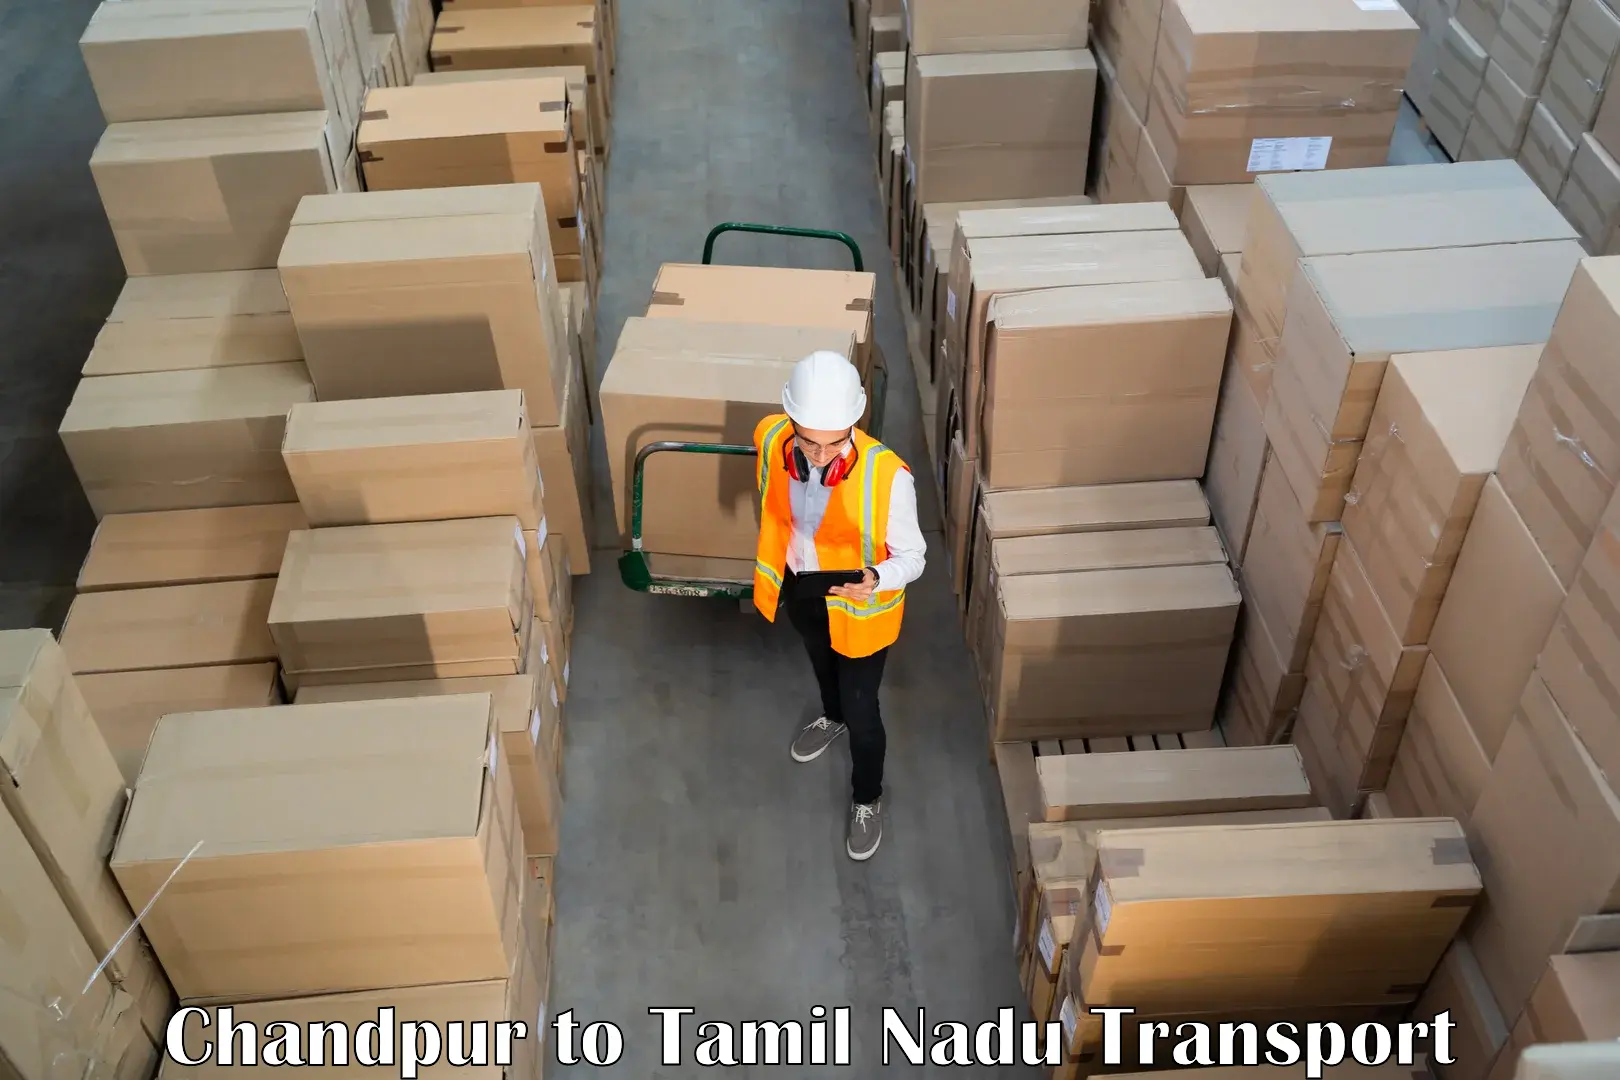 Delivery service Chandpur to Valparai